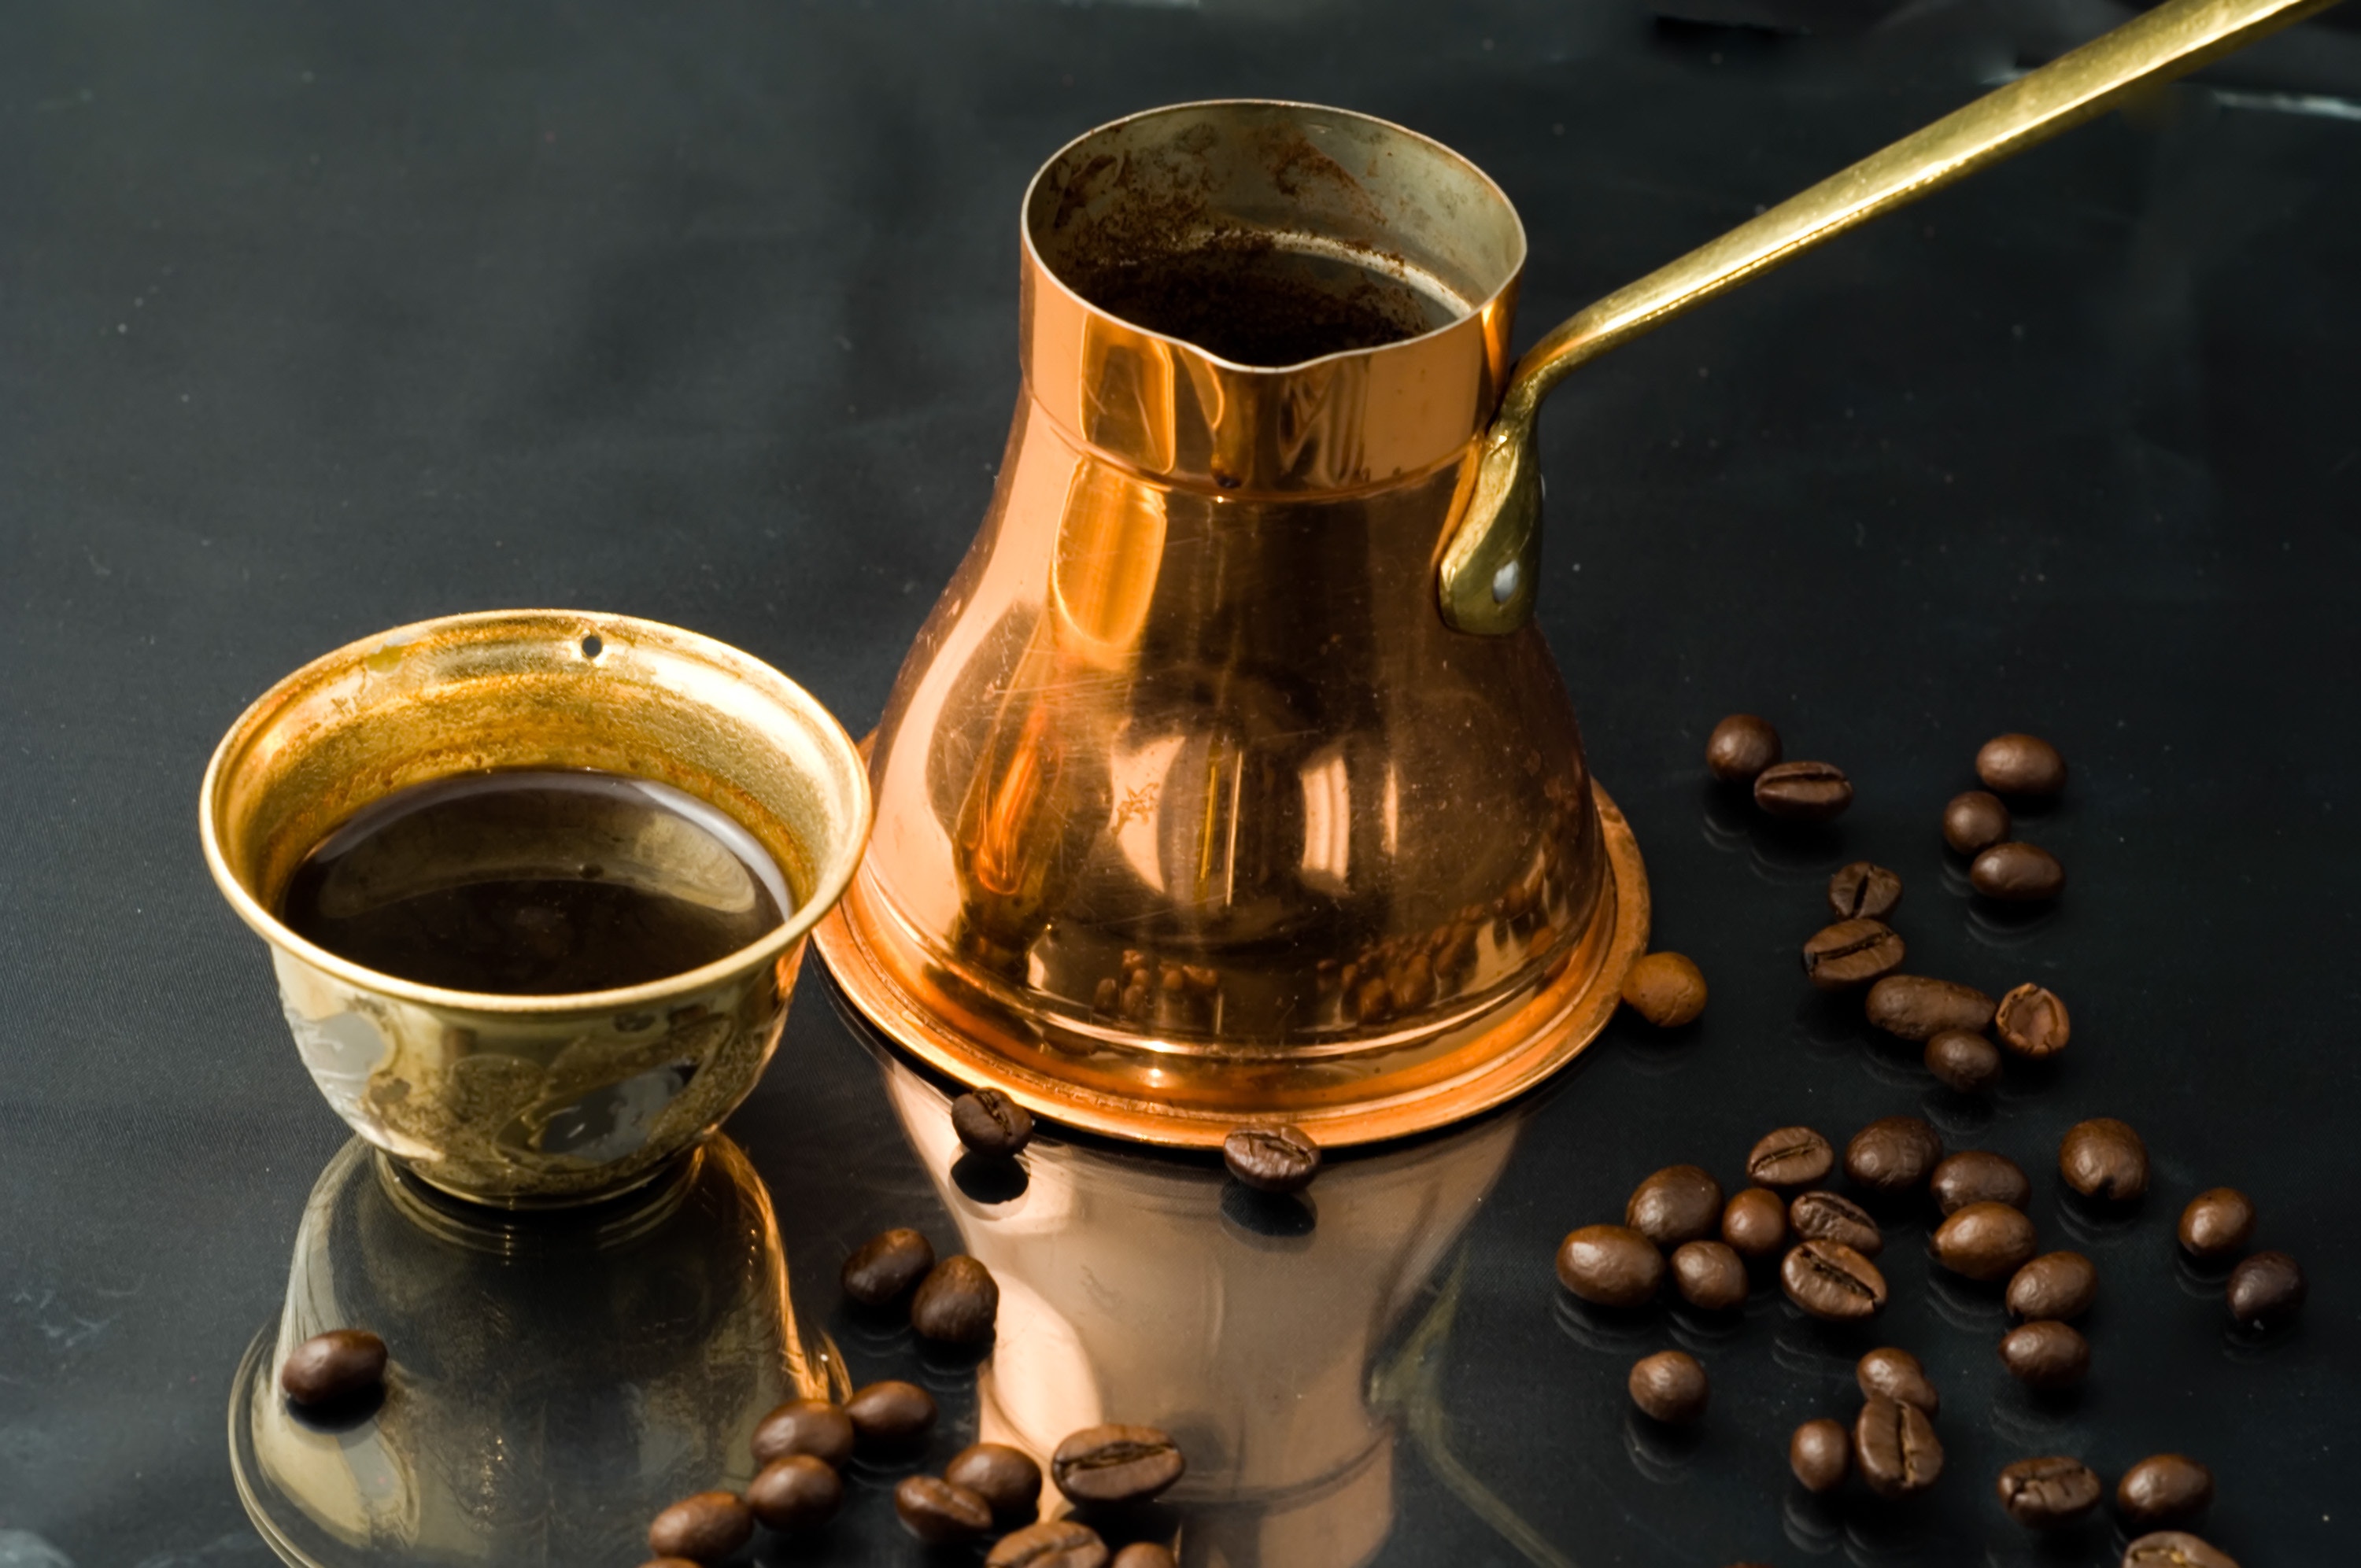 Jak parzyć idealną kawę po turecku? Instrukcja krok po kroku | Garneczki.pl  - blog